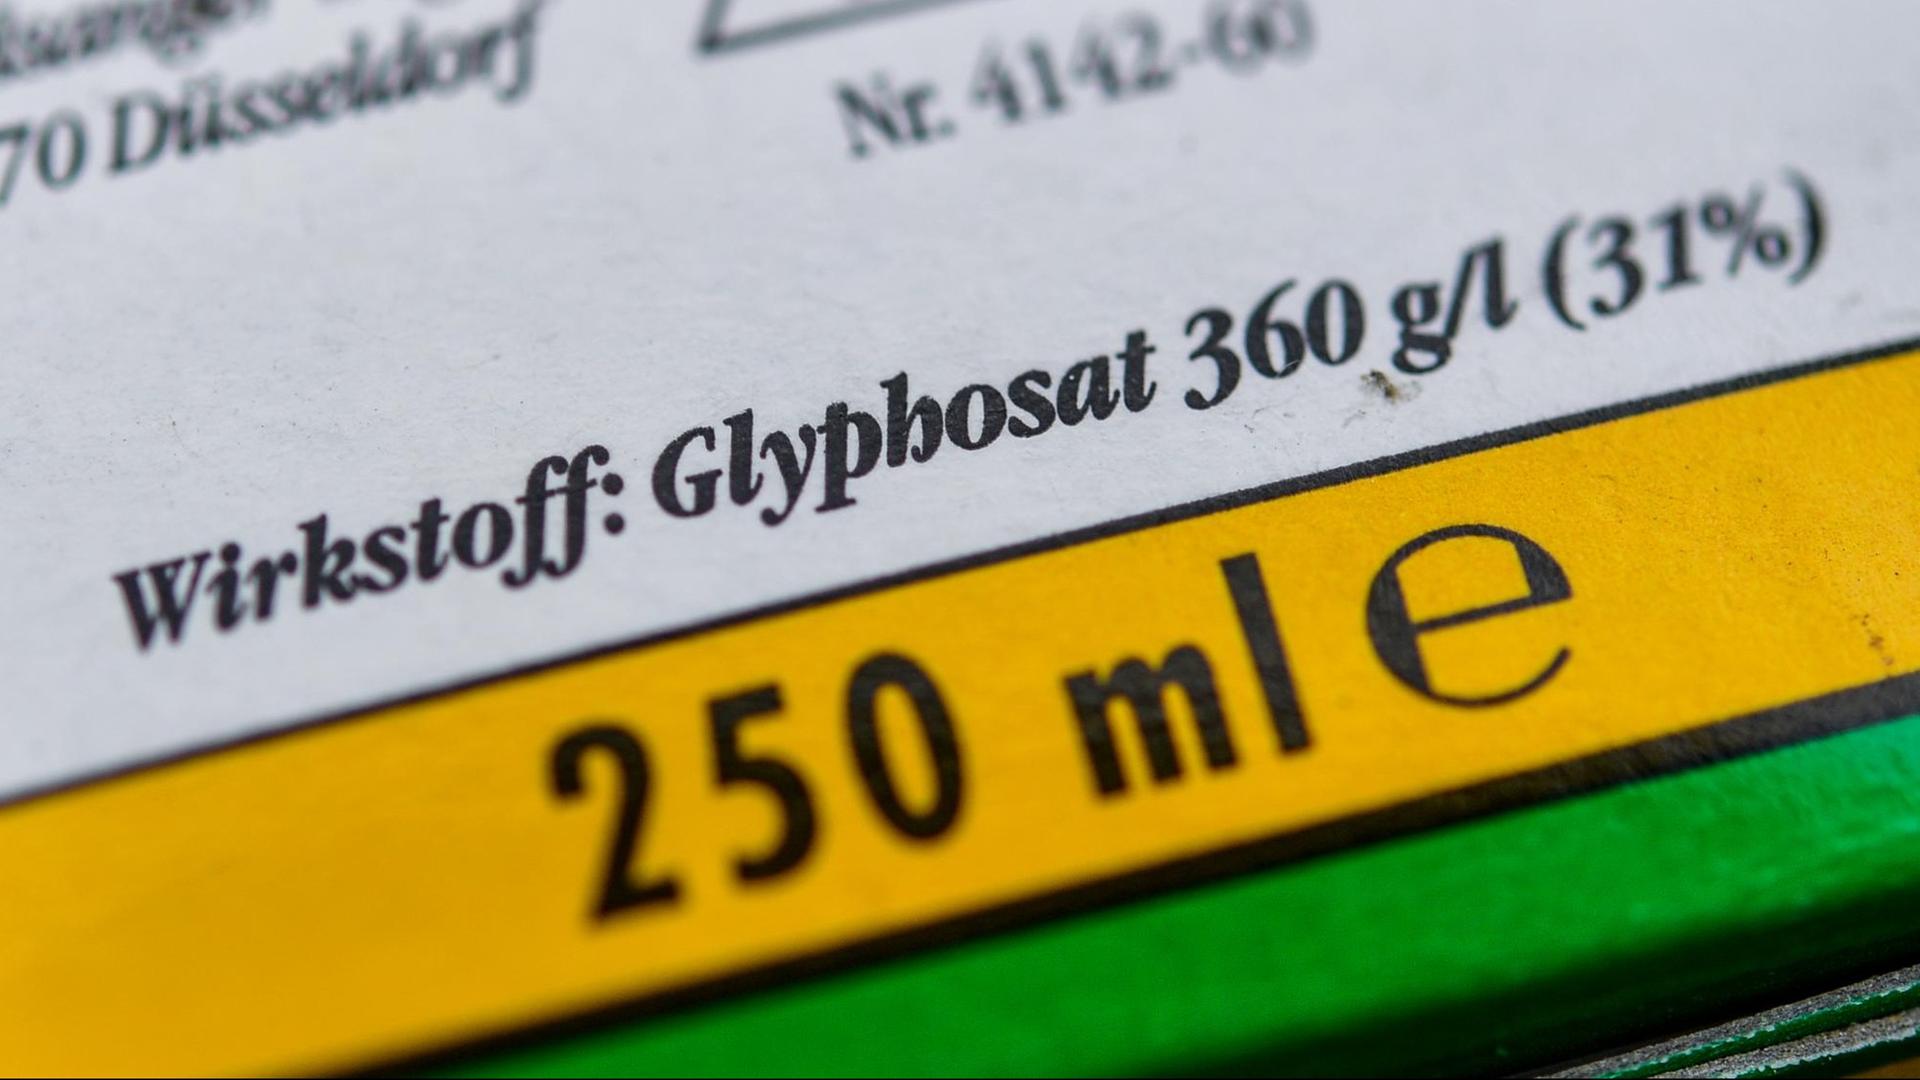 Die Verpackung eines Unkrautvernichtungsmittel, das den Wirkstoff Glyphosat enthält.